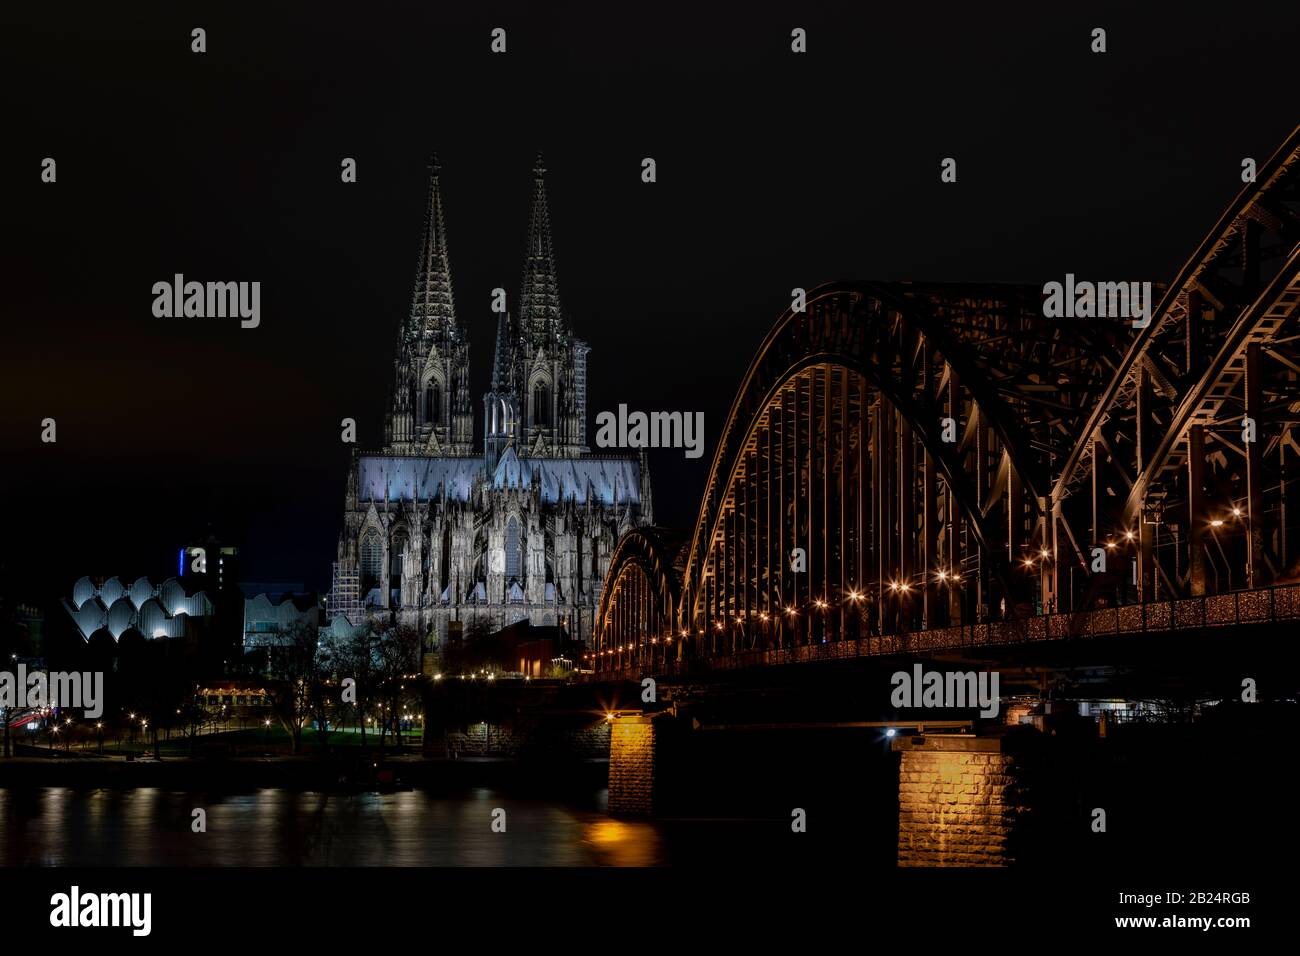 Il Duomo di Colonia e il ponte Hohenzollern sono i punti di riferimento più riconoscibili di Colonia. Entrambi sono illuminati durante le ore notturne. Foto Stock